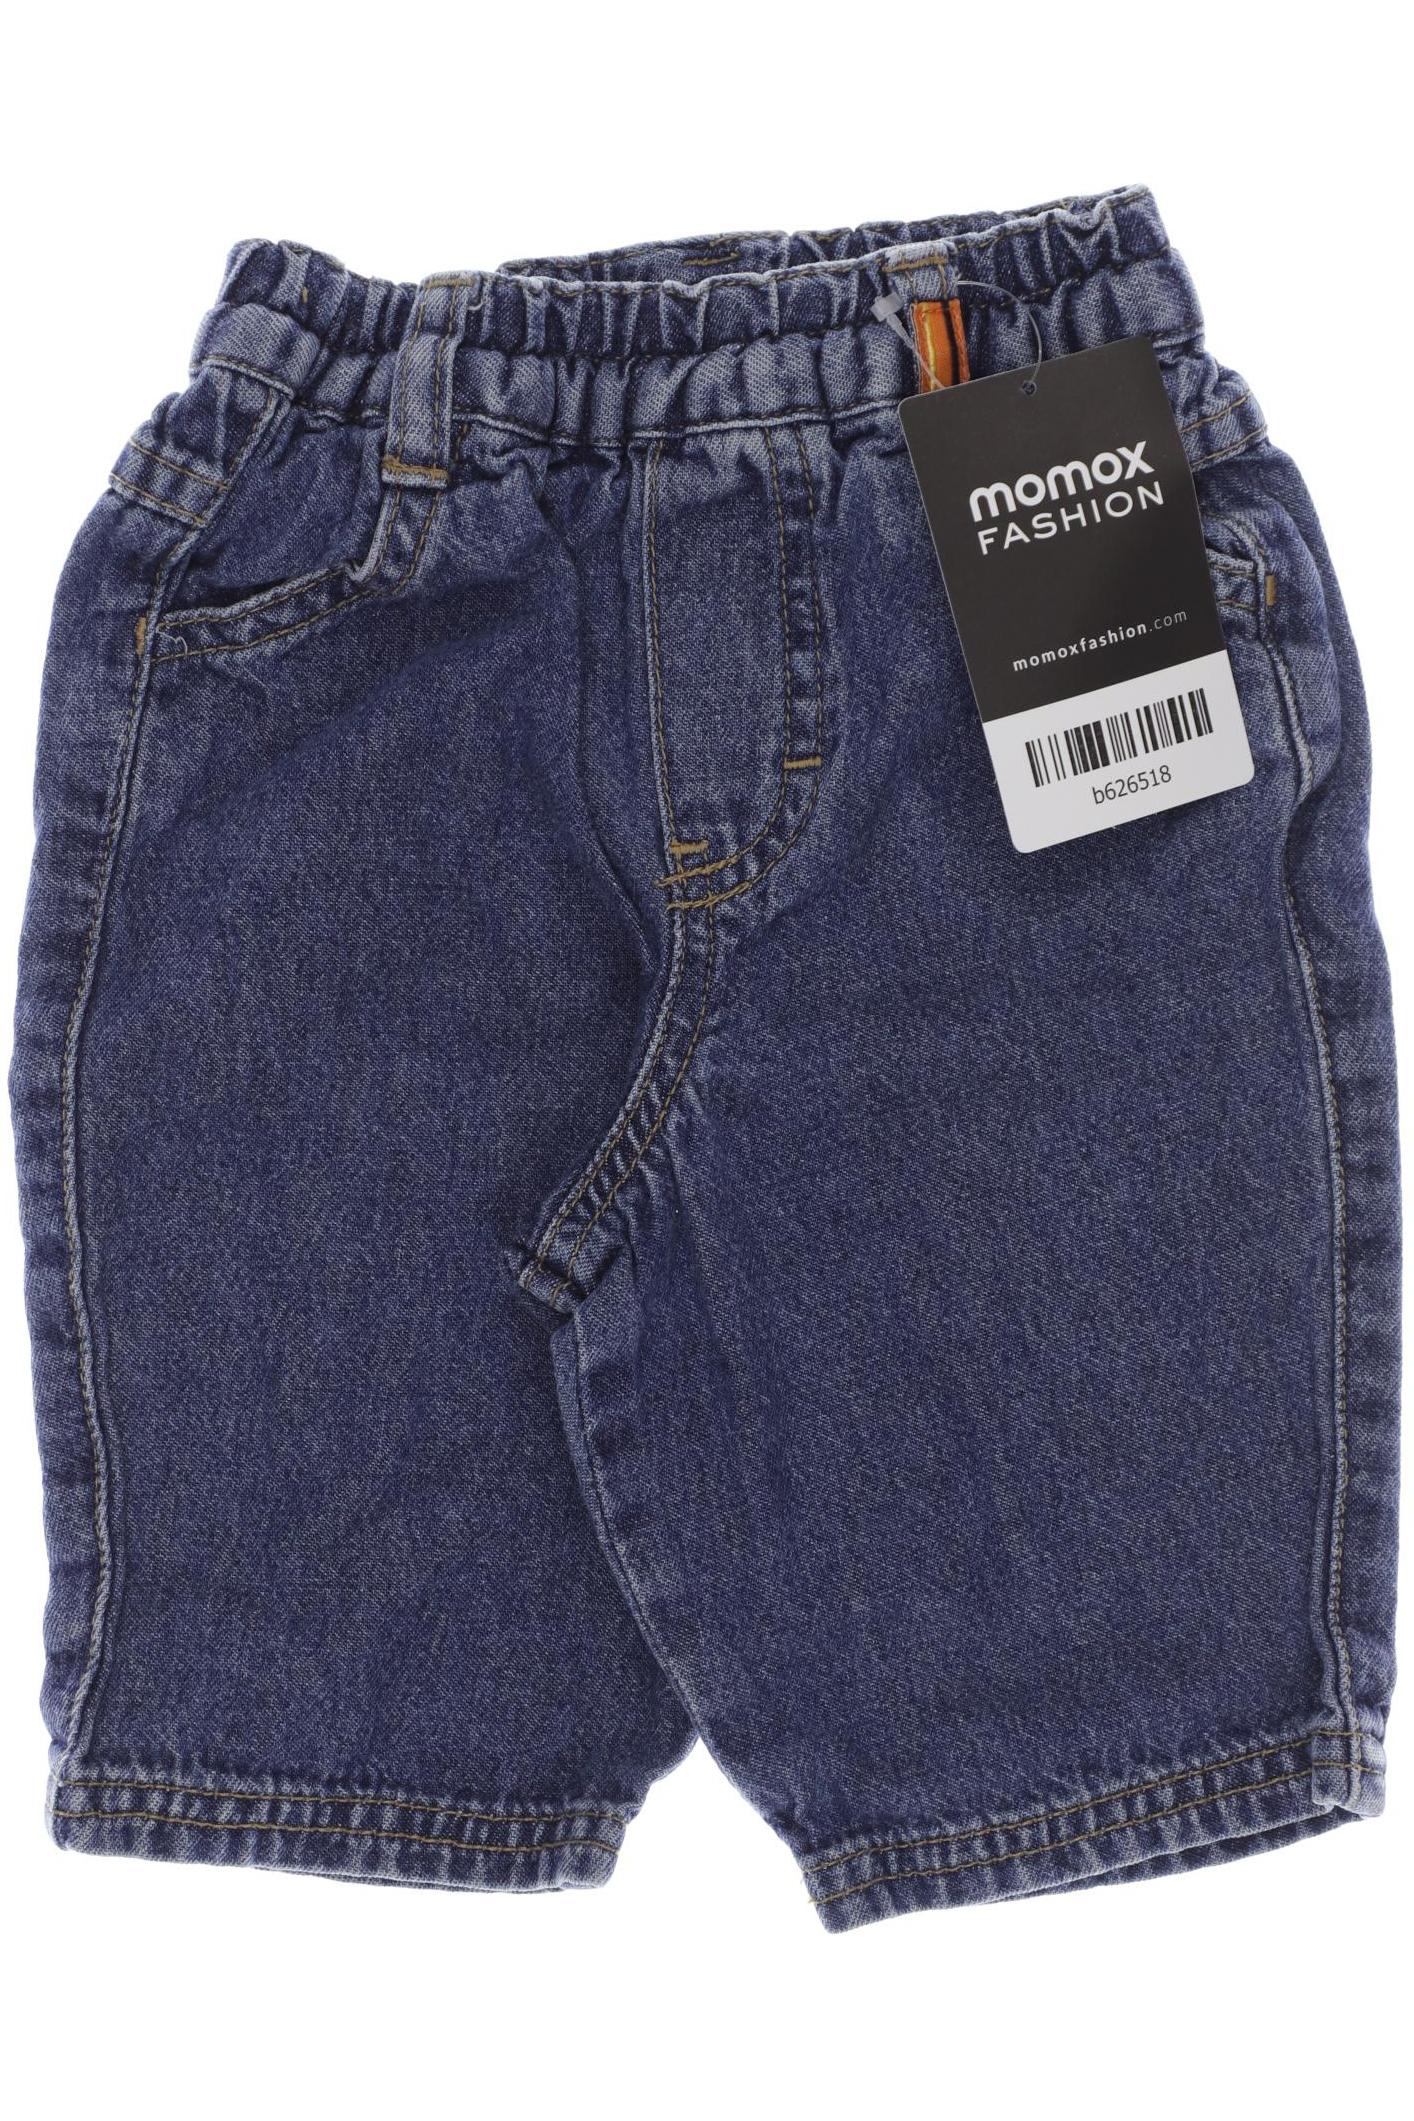 H&M Jungen Jeans, blau von H&M